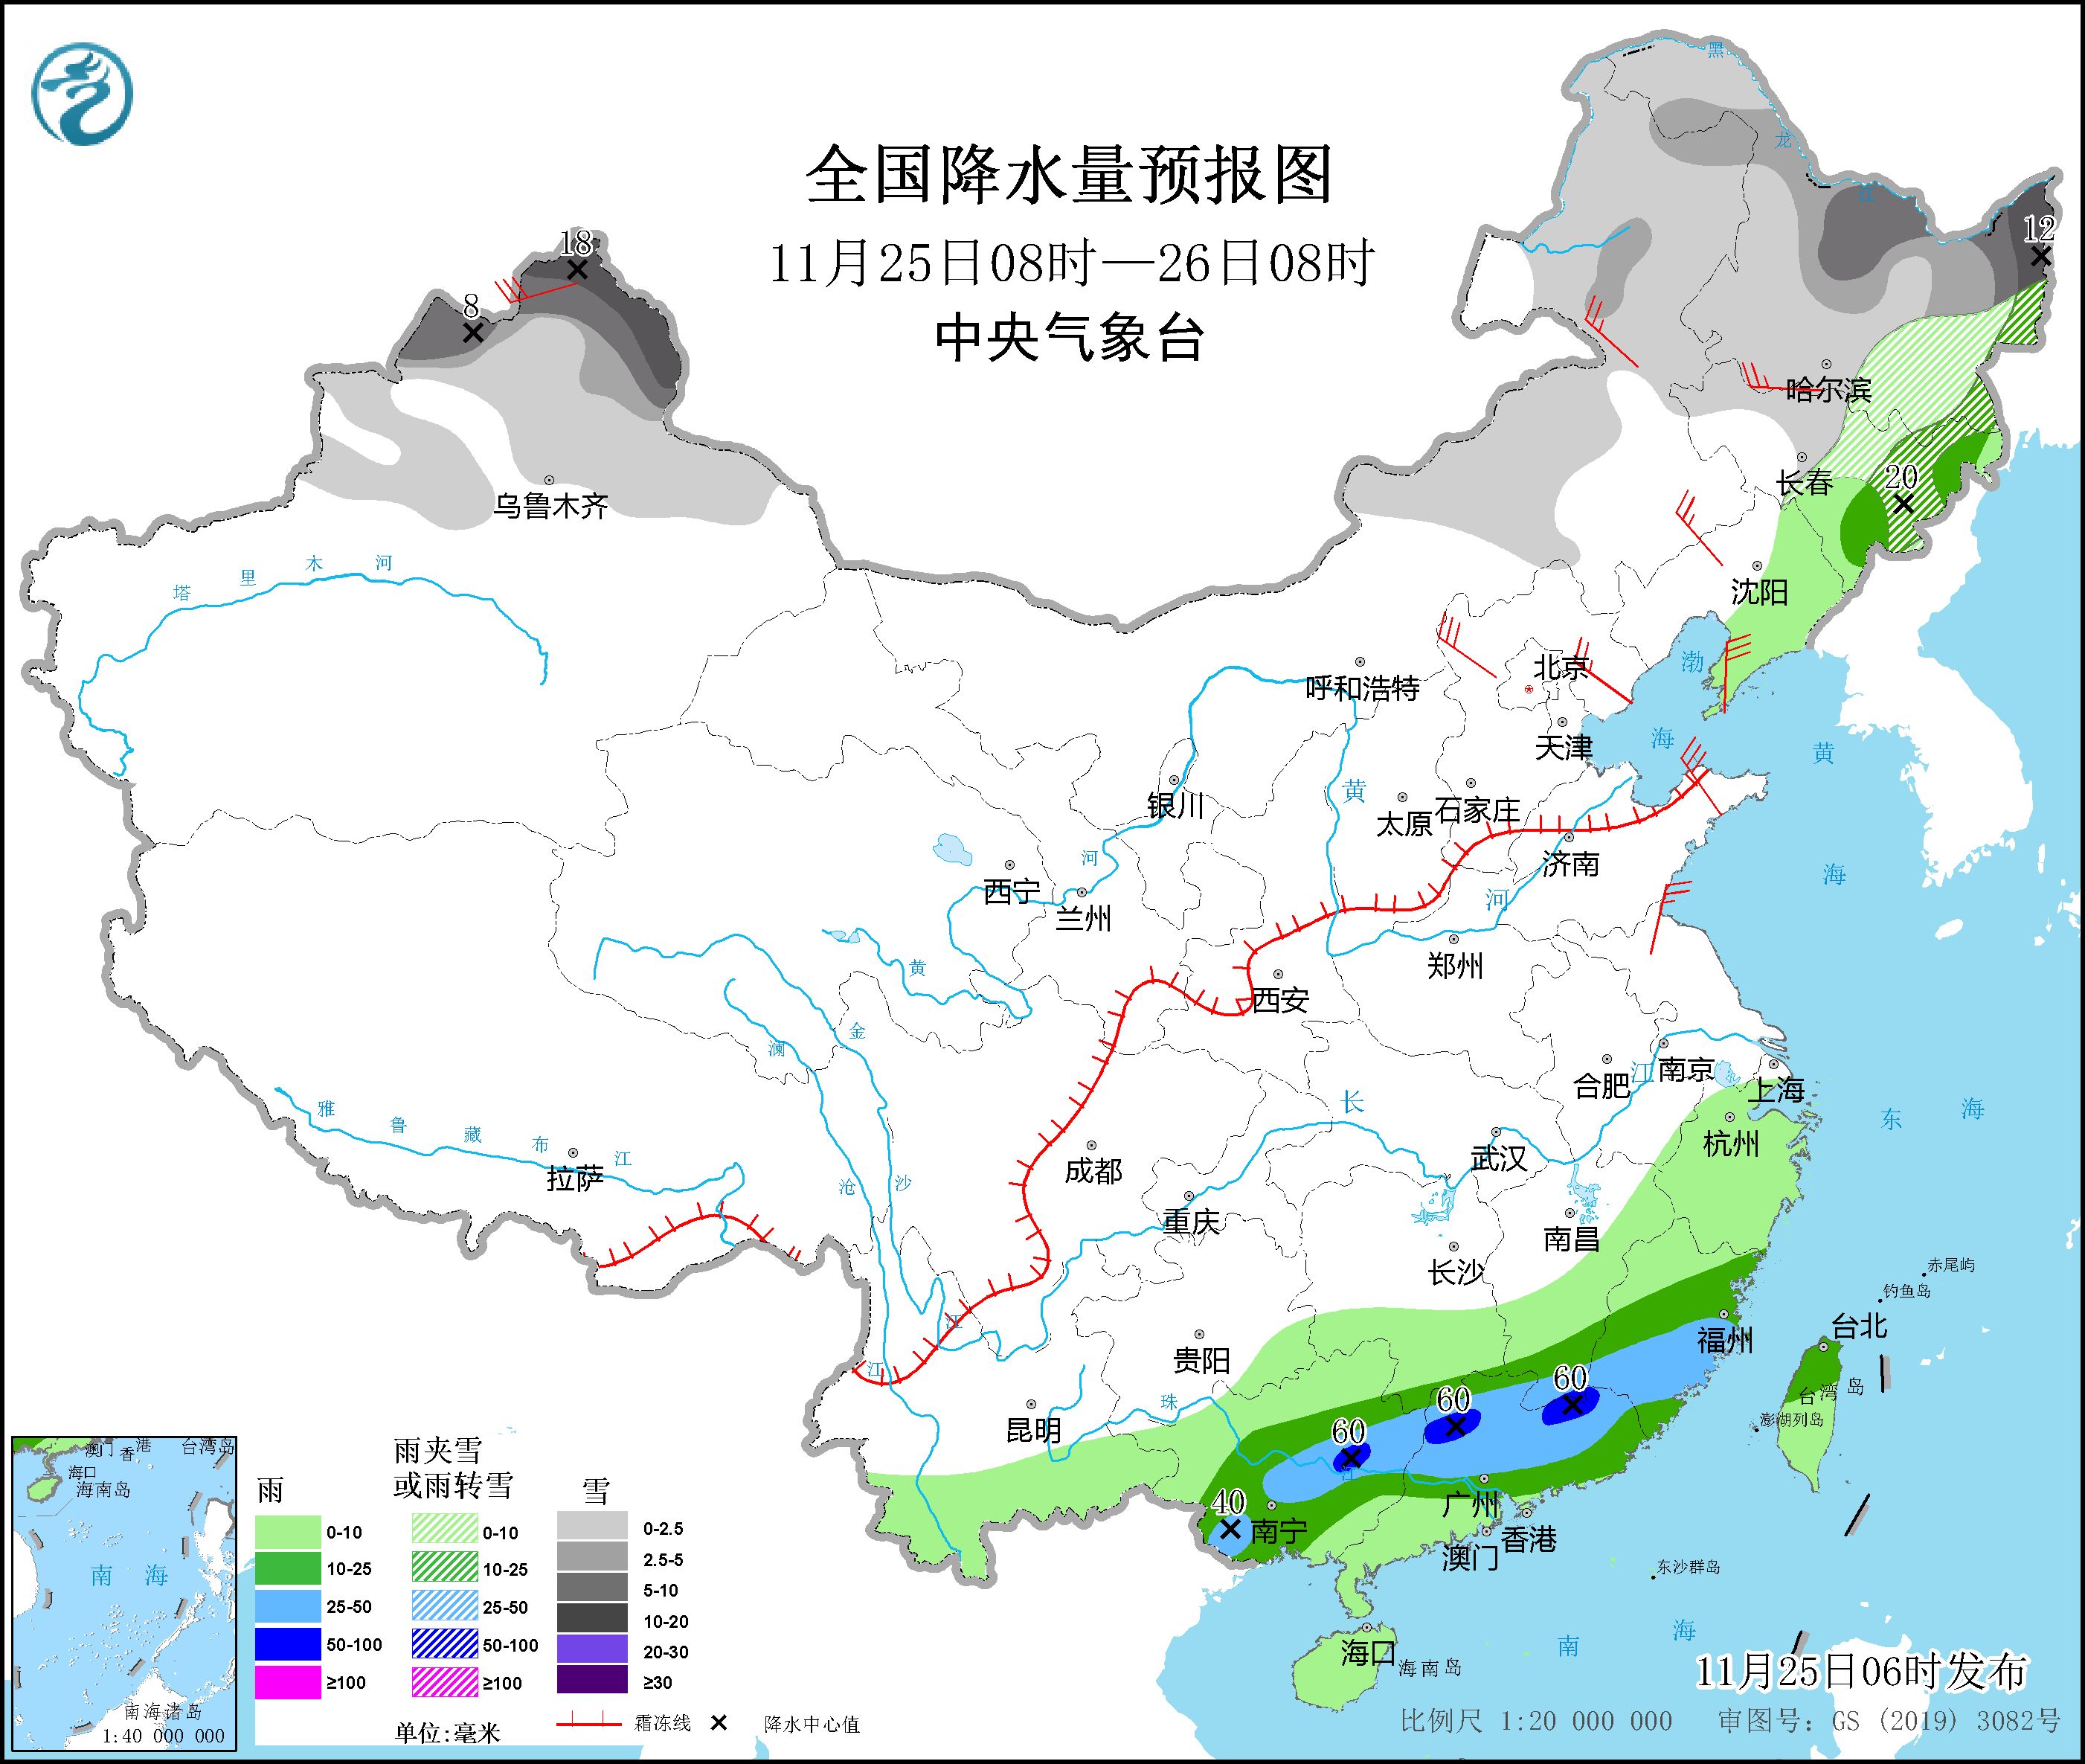 冷空气将影响东北地区 华南地区将有明显降雨